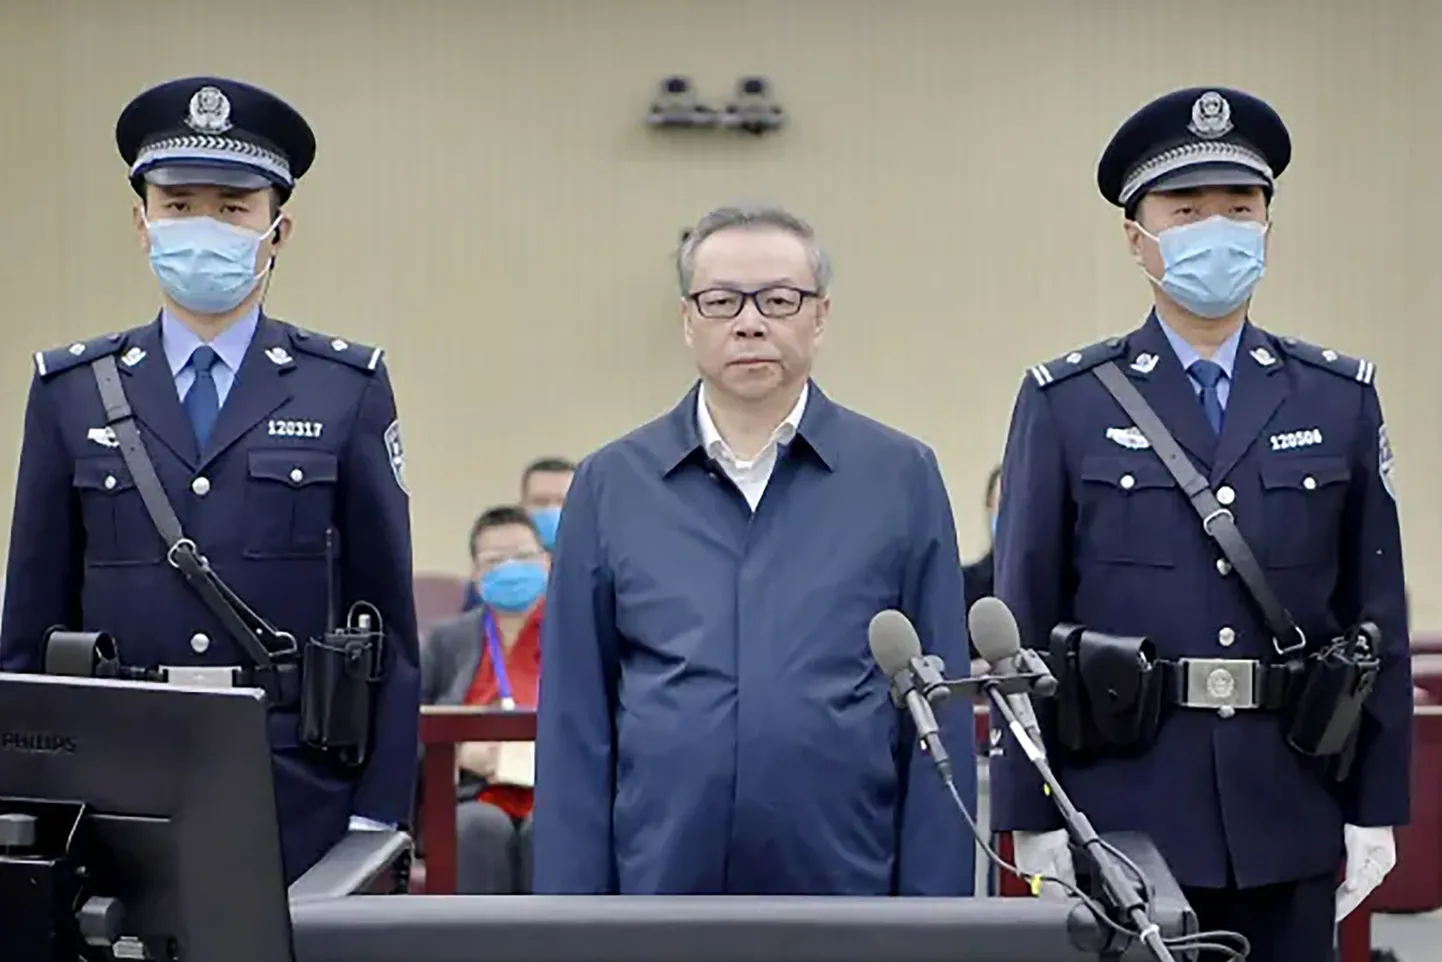 Hiina pankur Lai Xiaomin kohtuprotsessil.